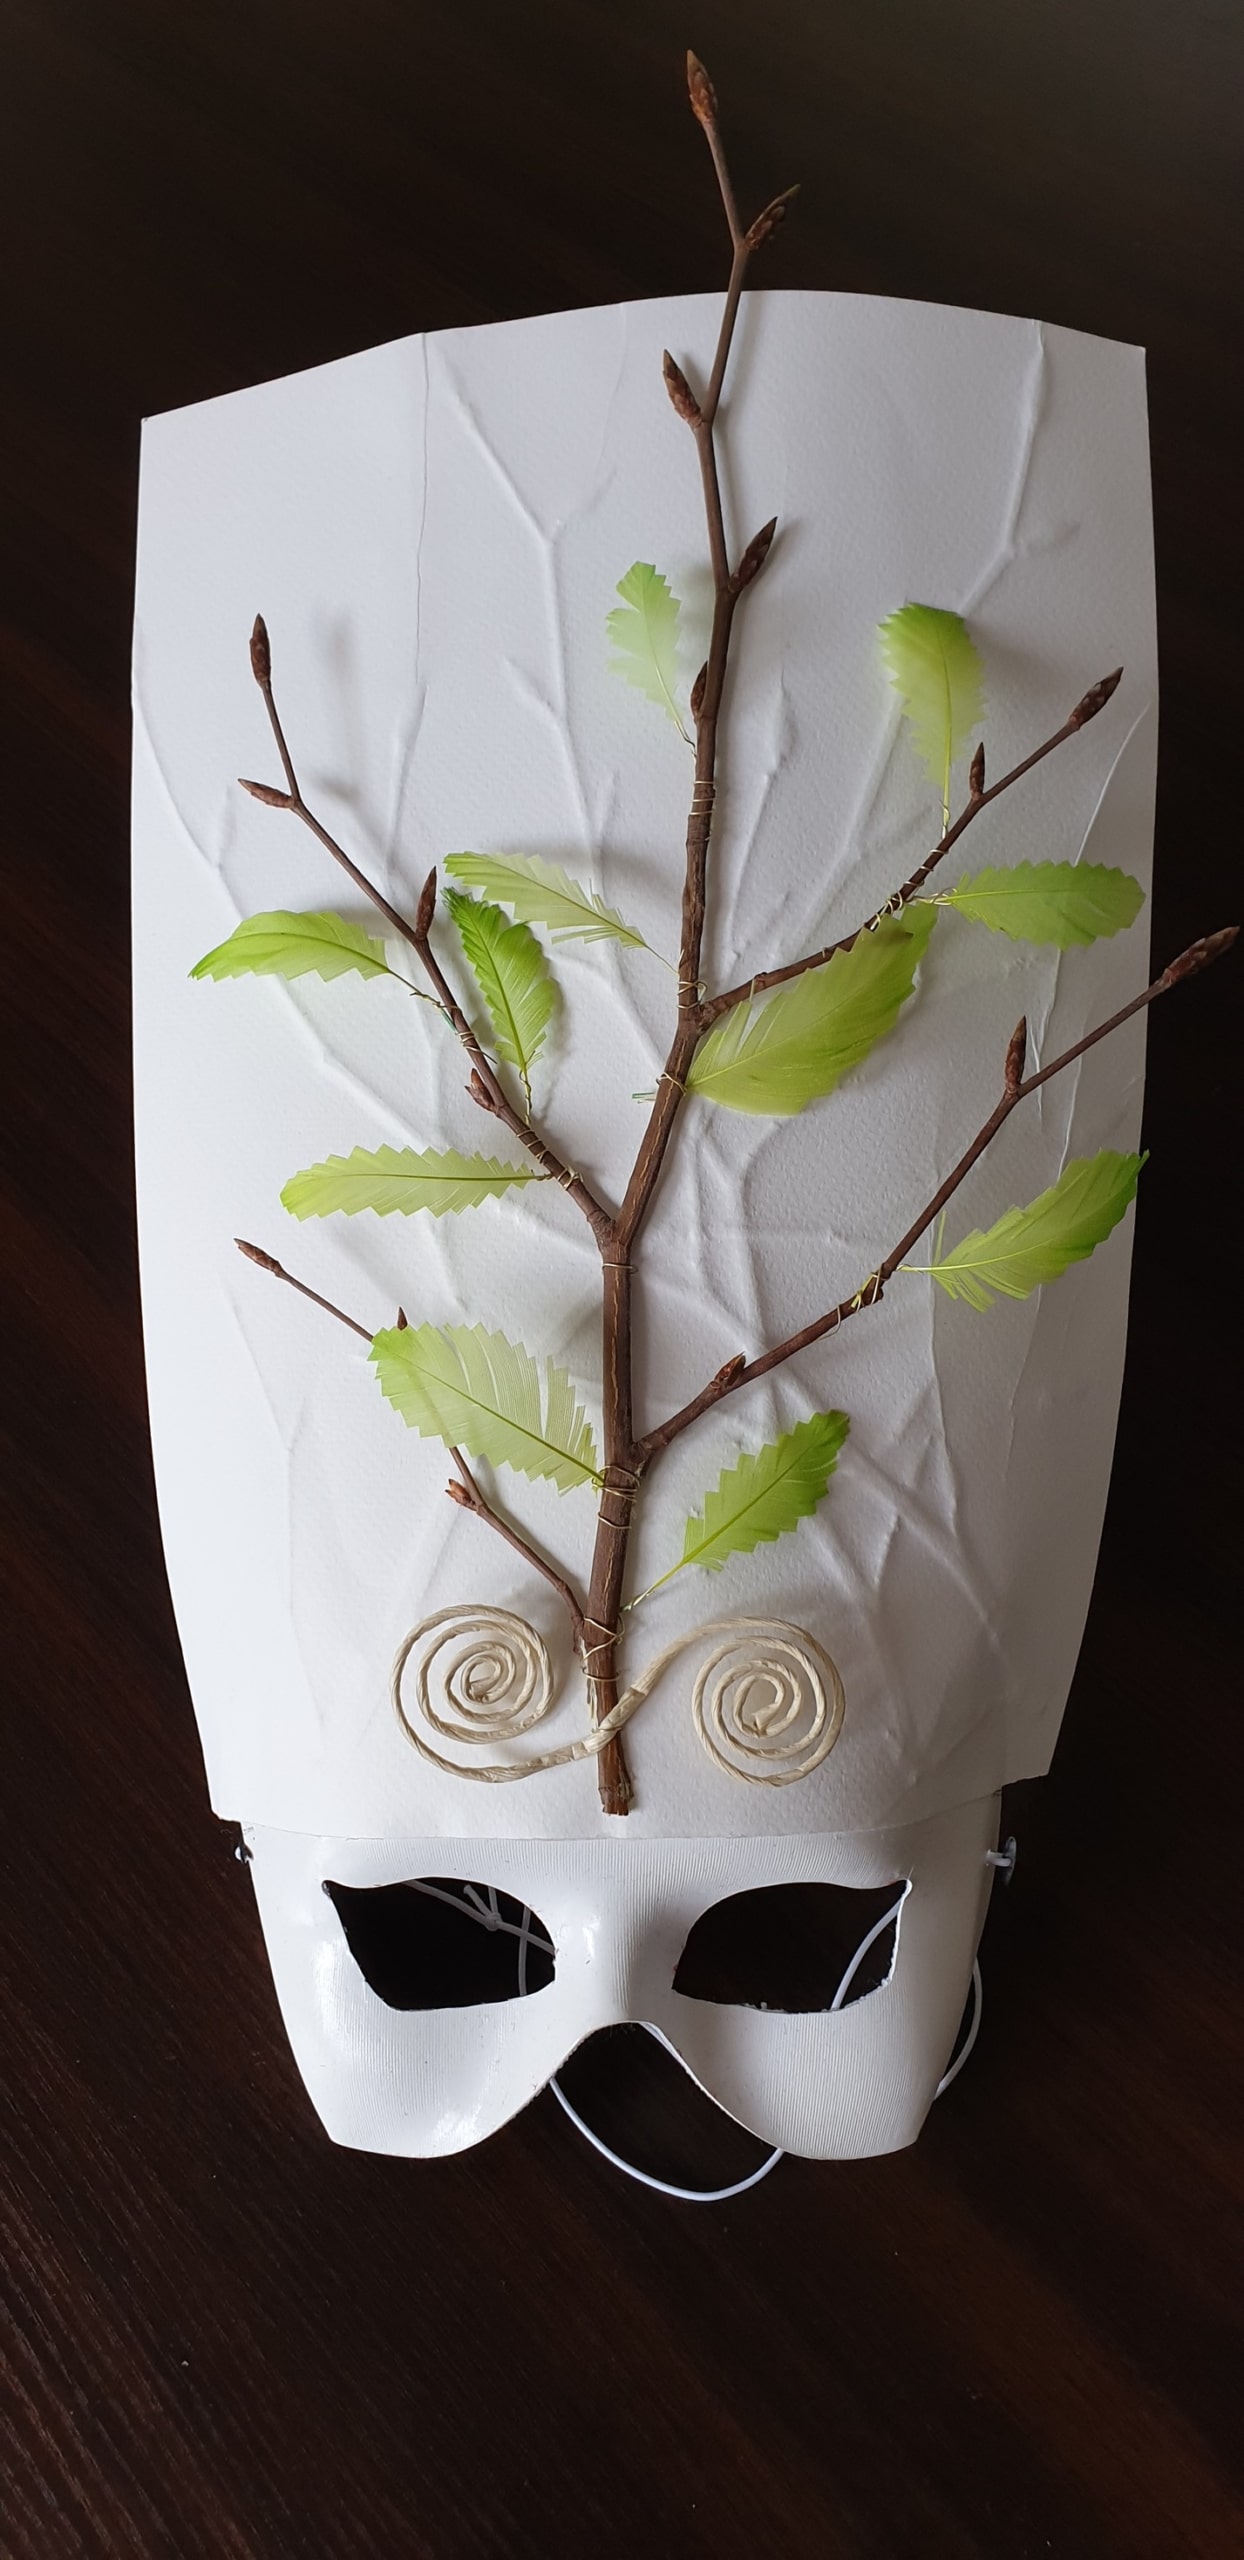 Photo du masque de Catherine, fait de branches et de plumes vertes en formes de feuilles